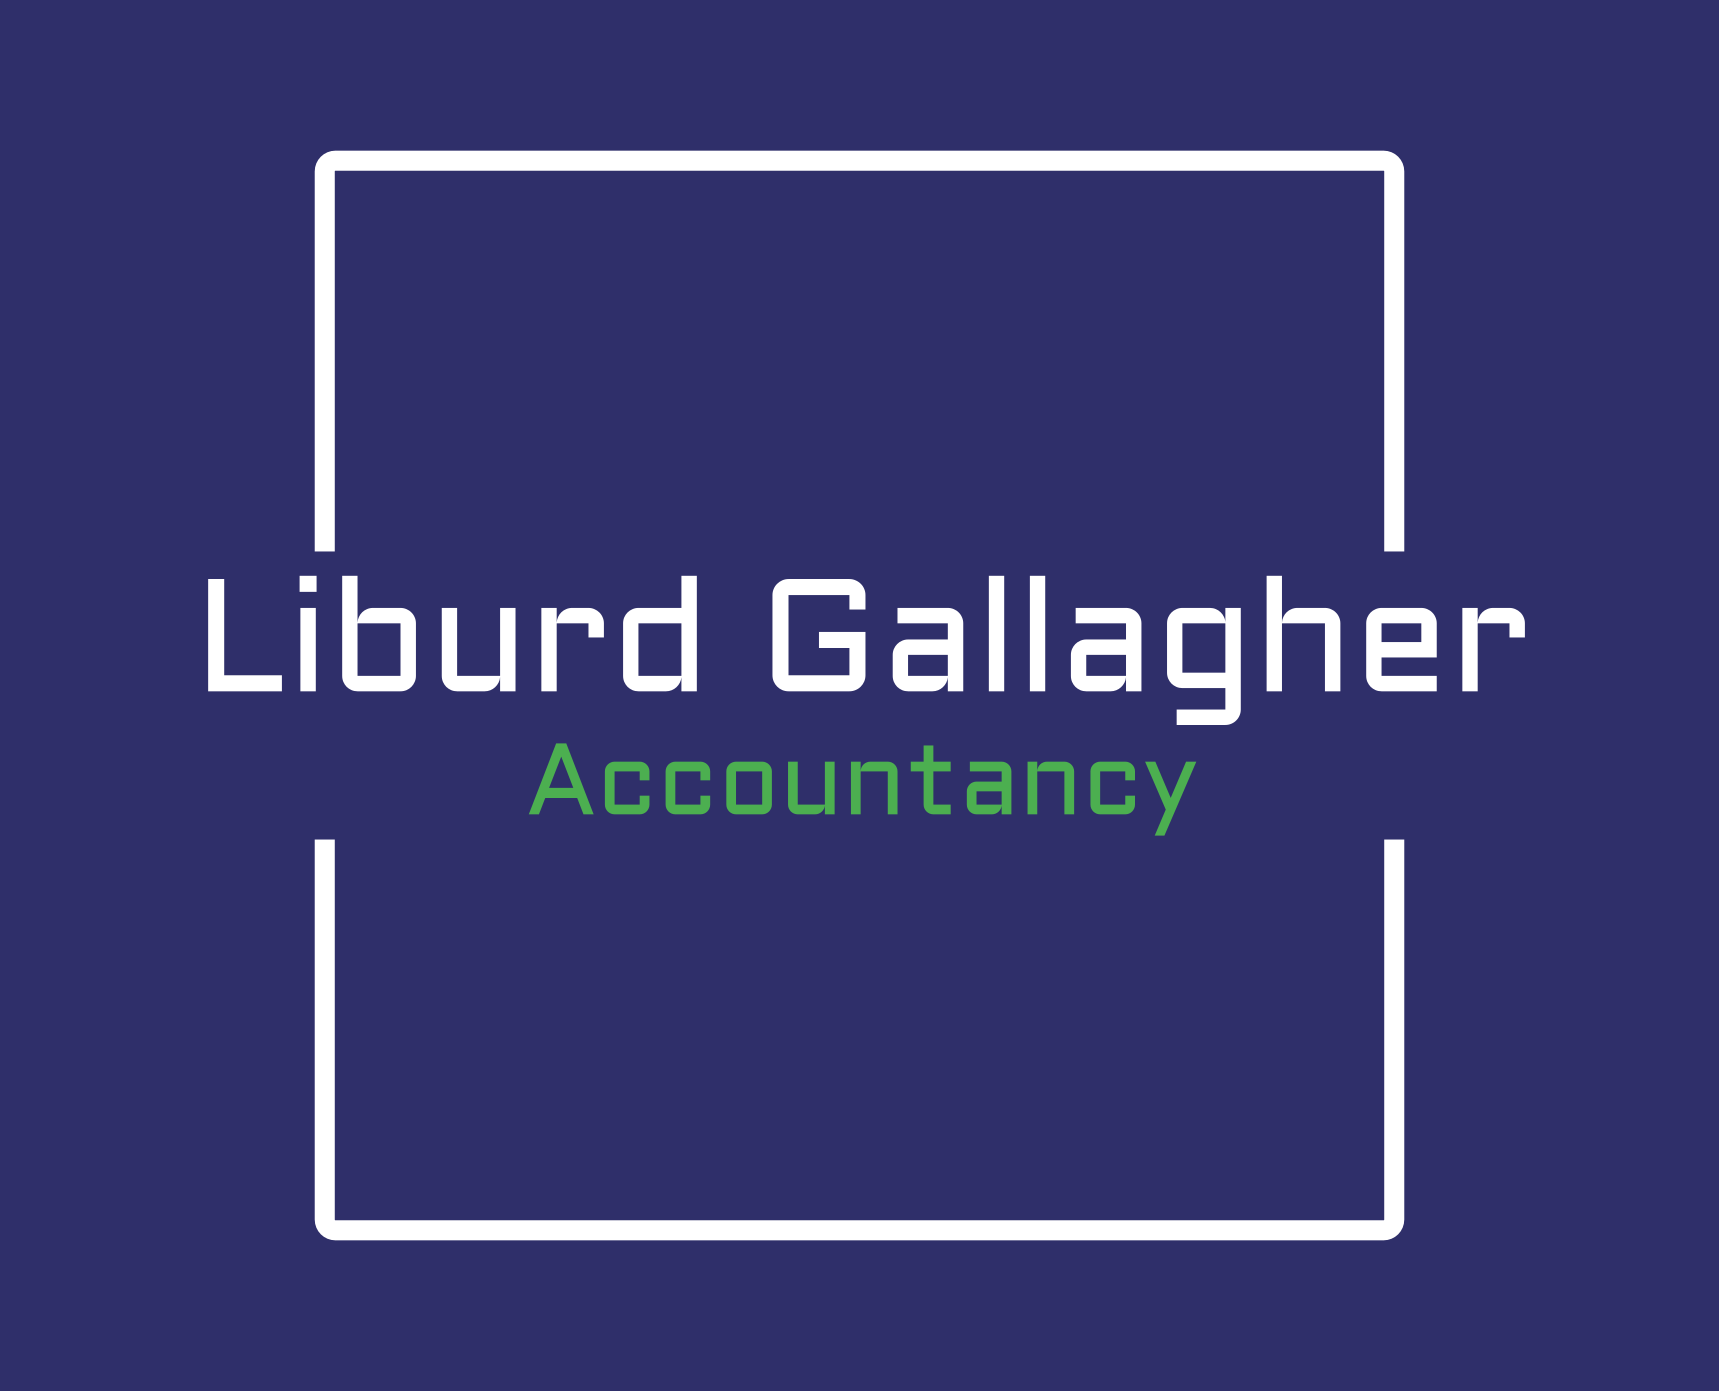 Logo of Liburd Gallagher Accountancy Ltd